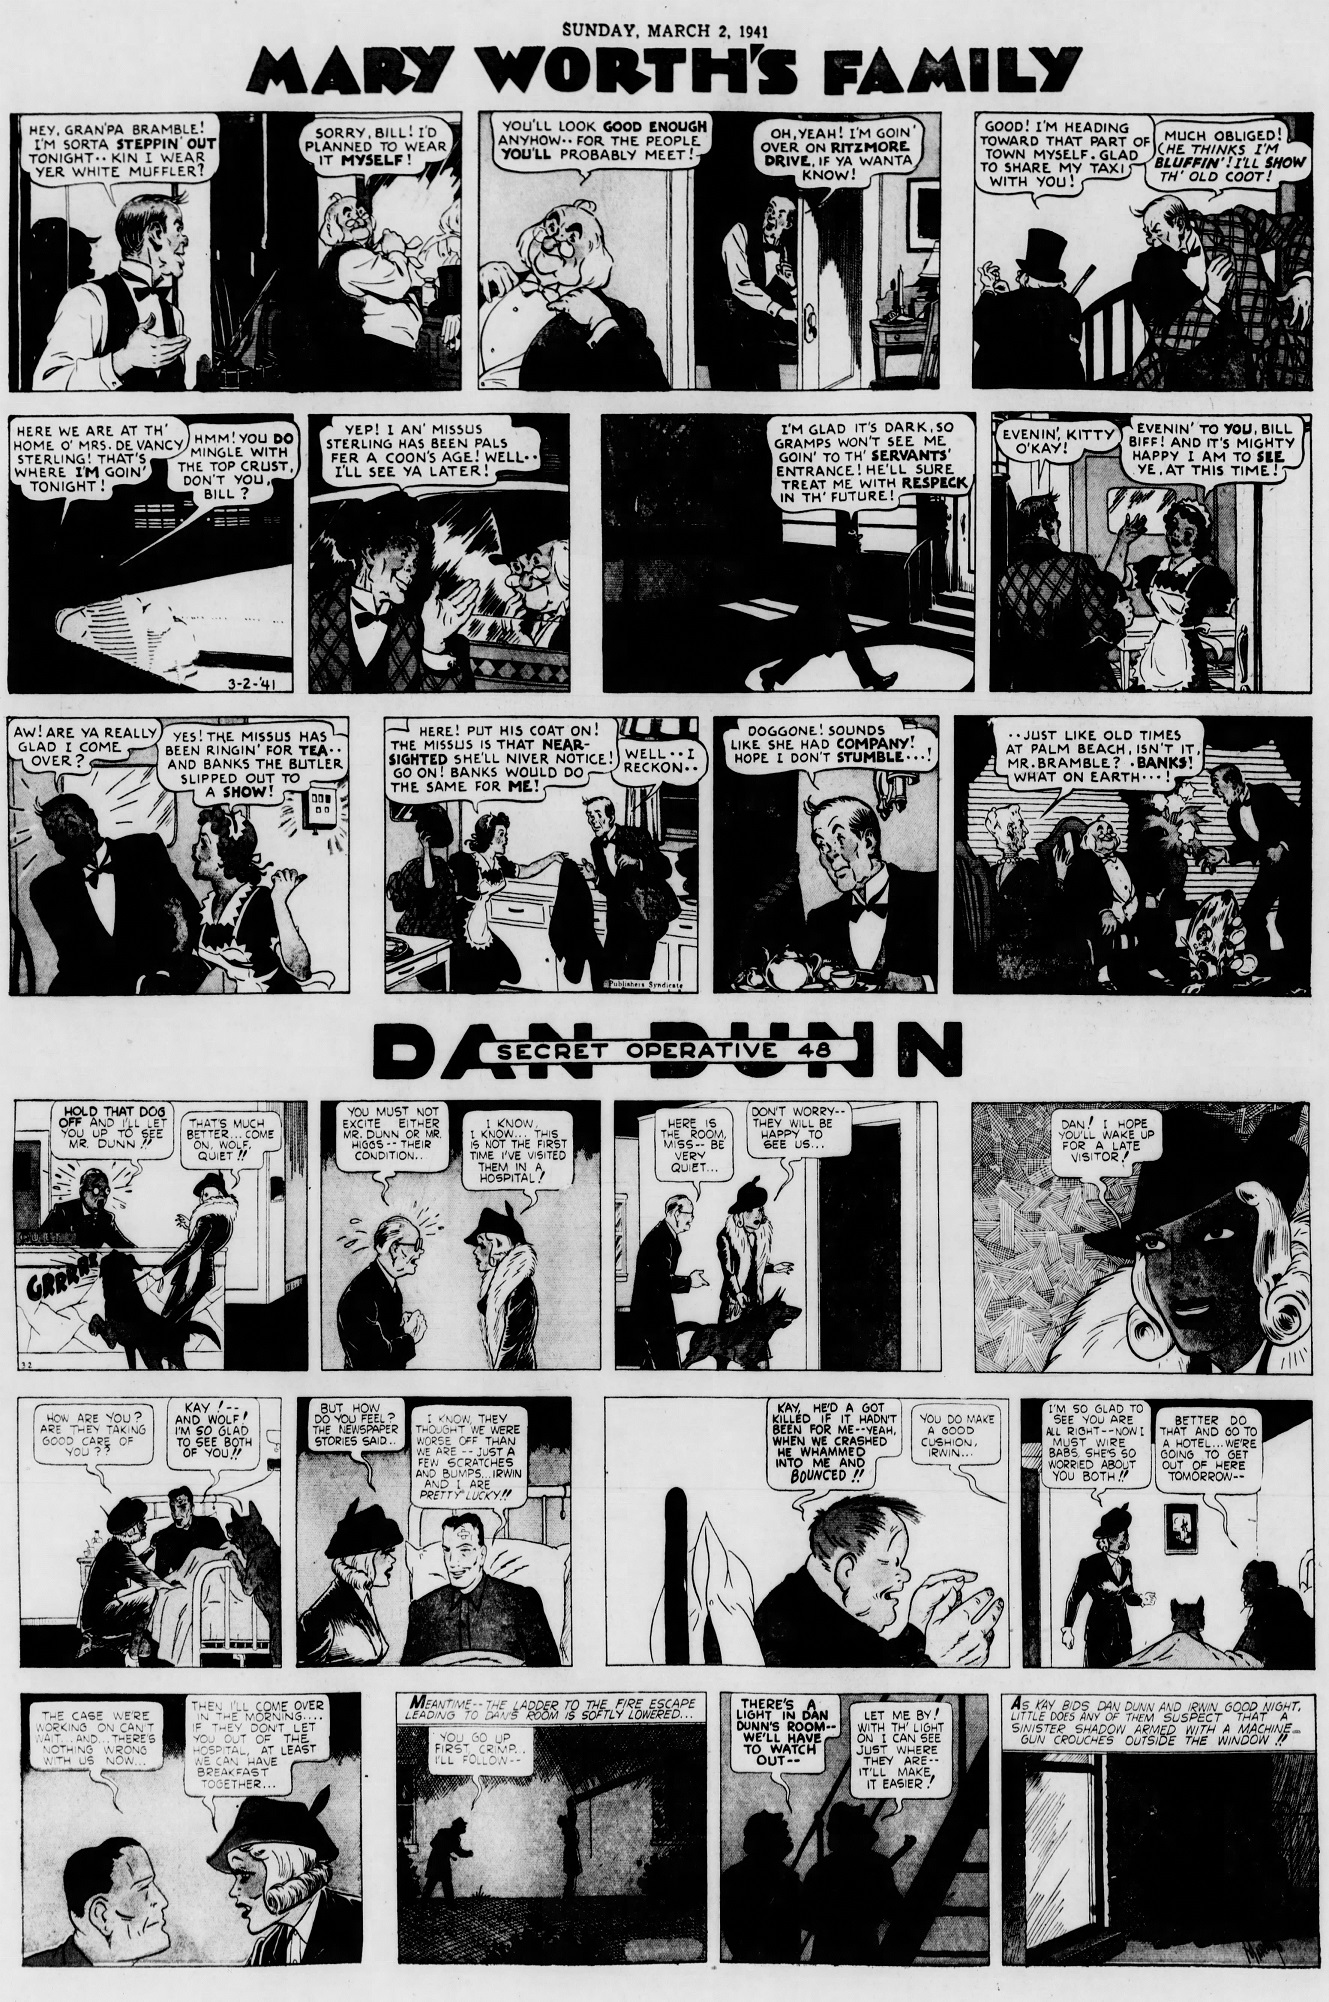 The_Brooklyn_Daily_Eagle_Sun__Mar_2__1941_(9).jpg